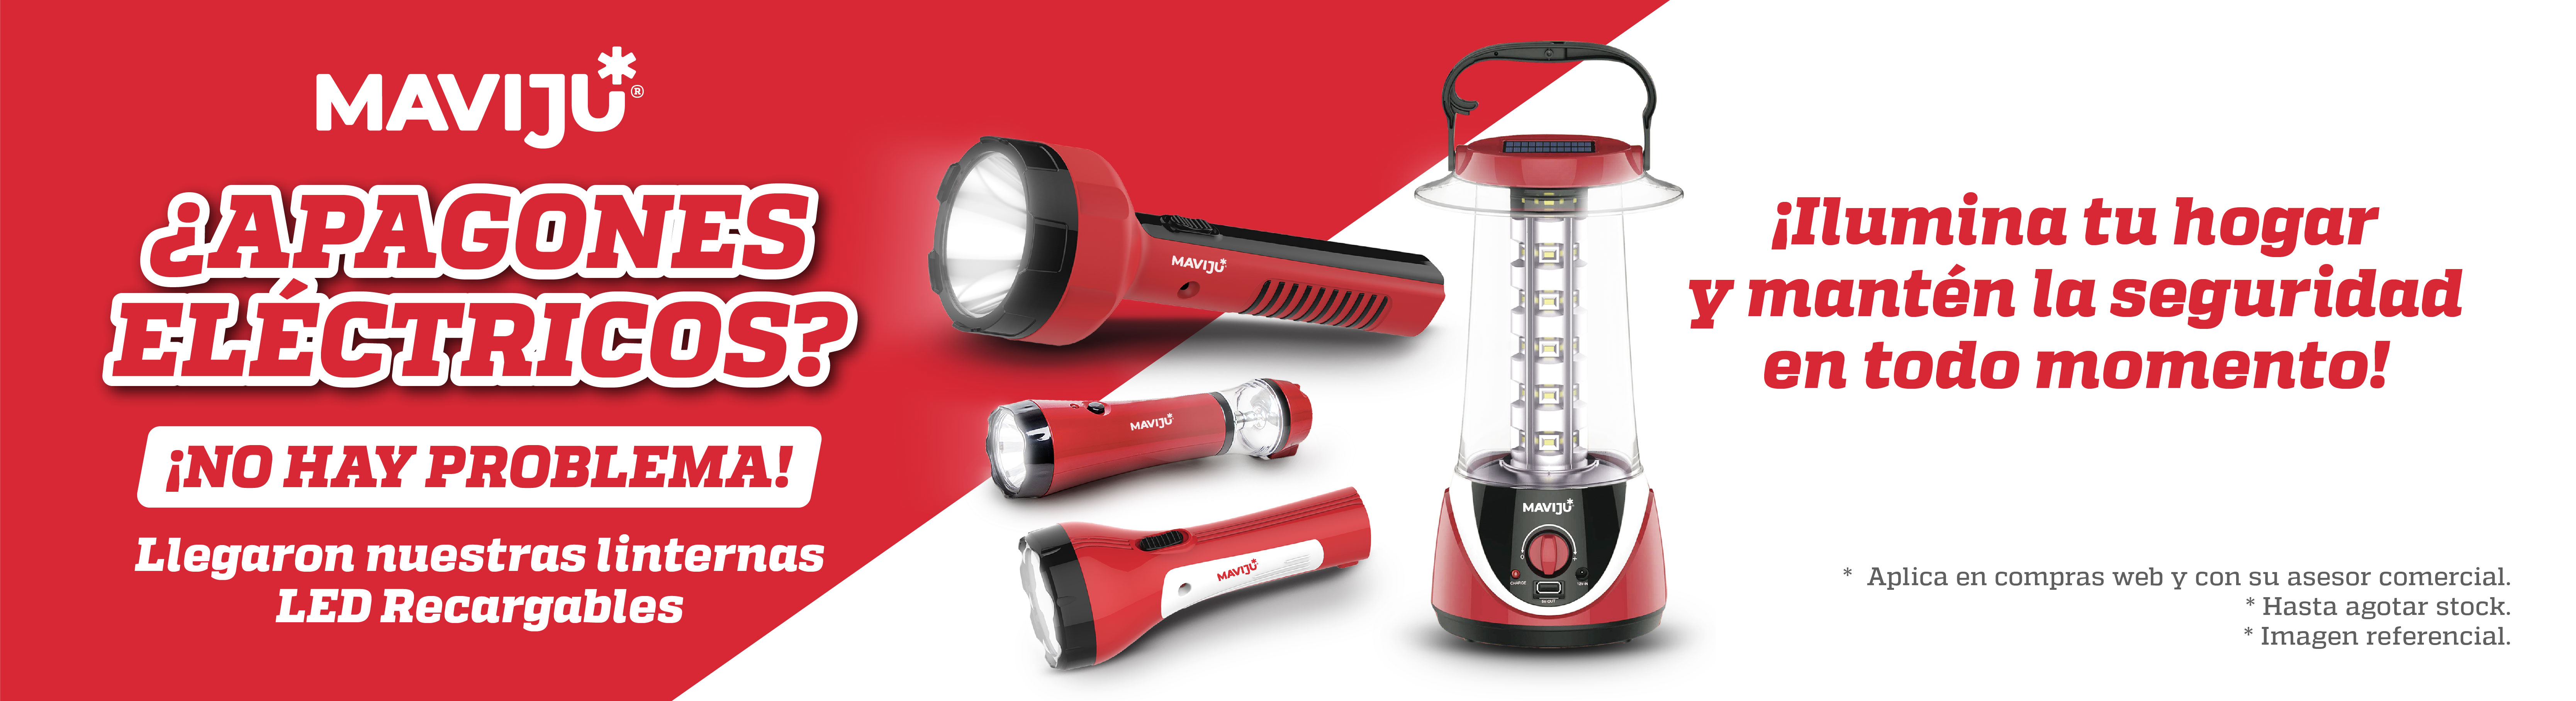 Linternas LED recargables baterías apagones